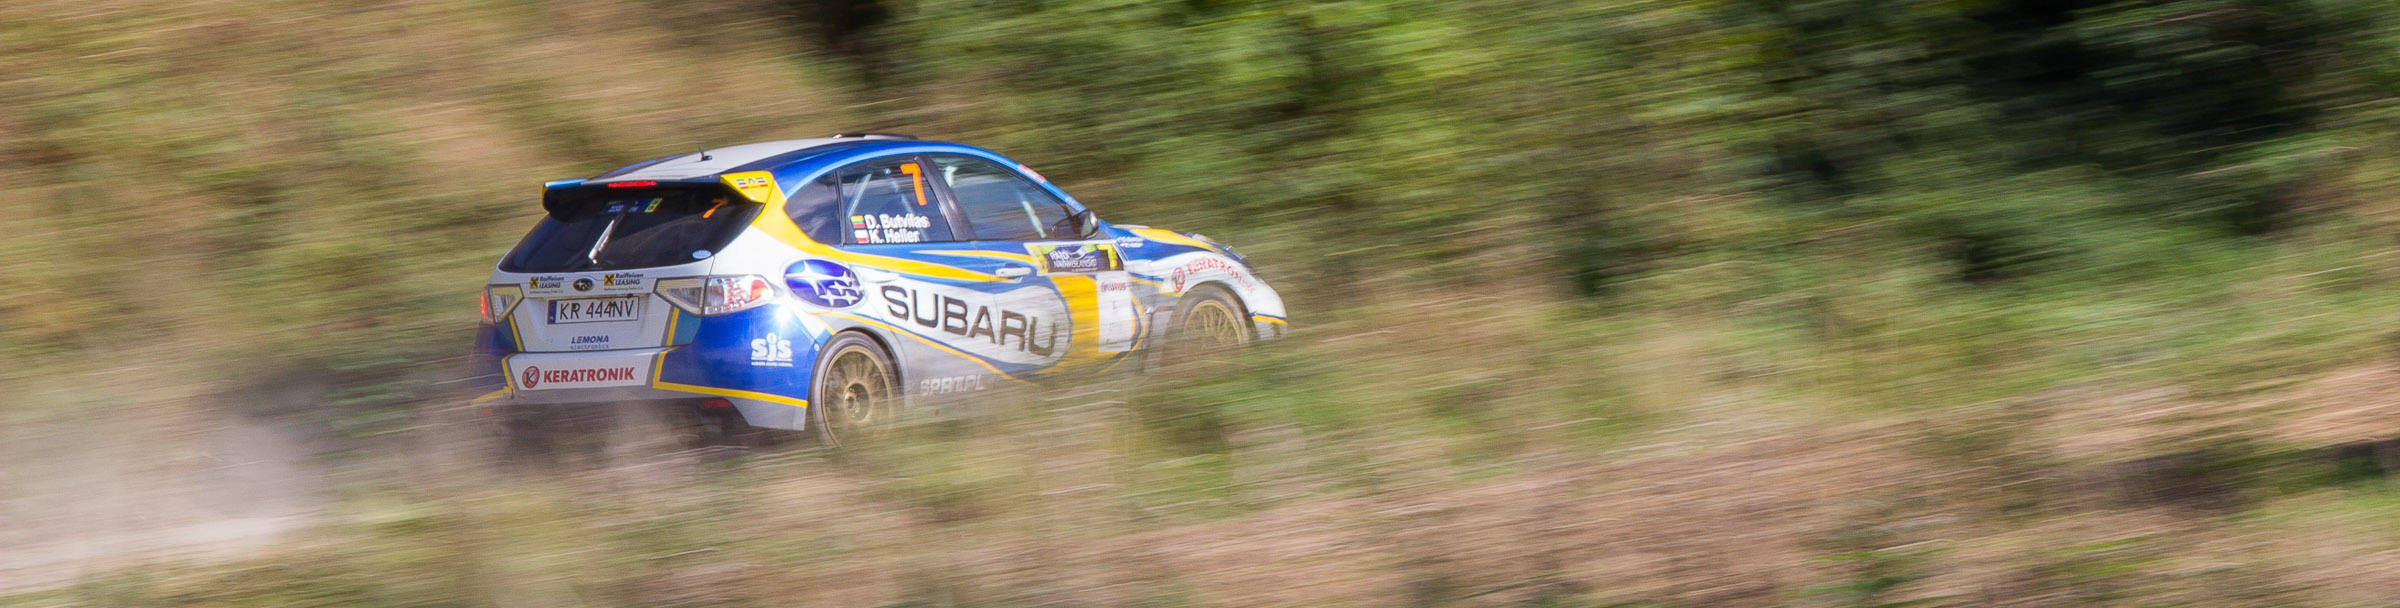 Subaru Impreza odjeżdża z punktu widokowego na trasie OS-u Garbów